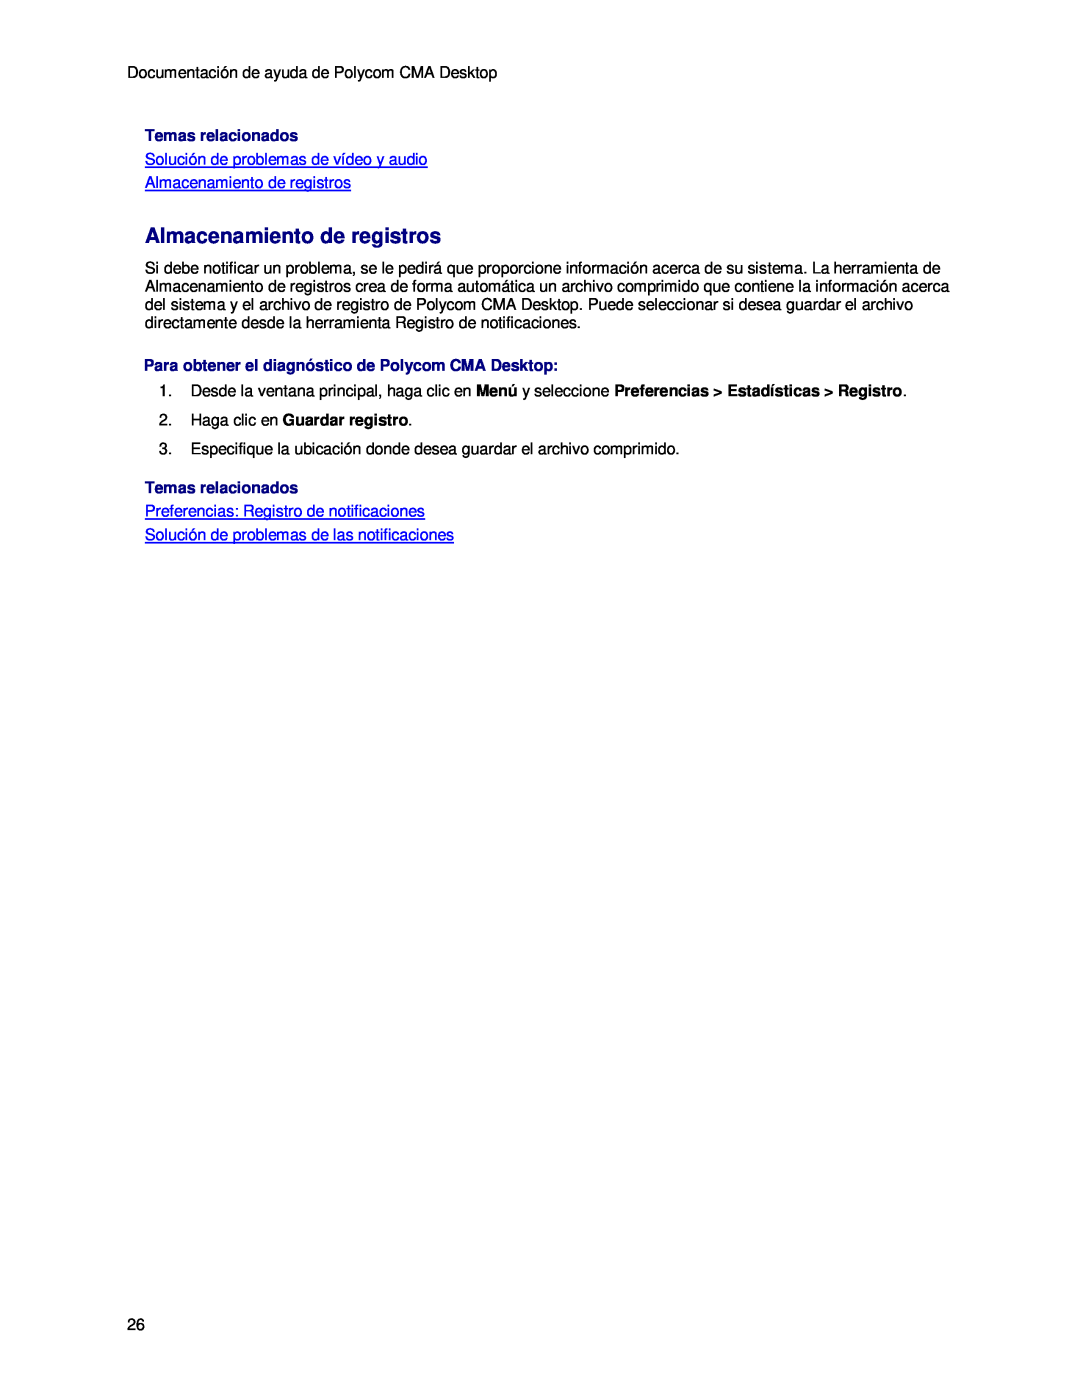 Polycom 3725-26798-002 manual Solución de problemas de vídeo y audio Almacenamiento de registros, Temas relacionados 